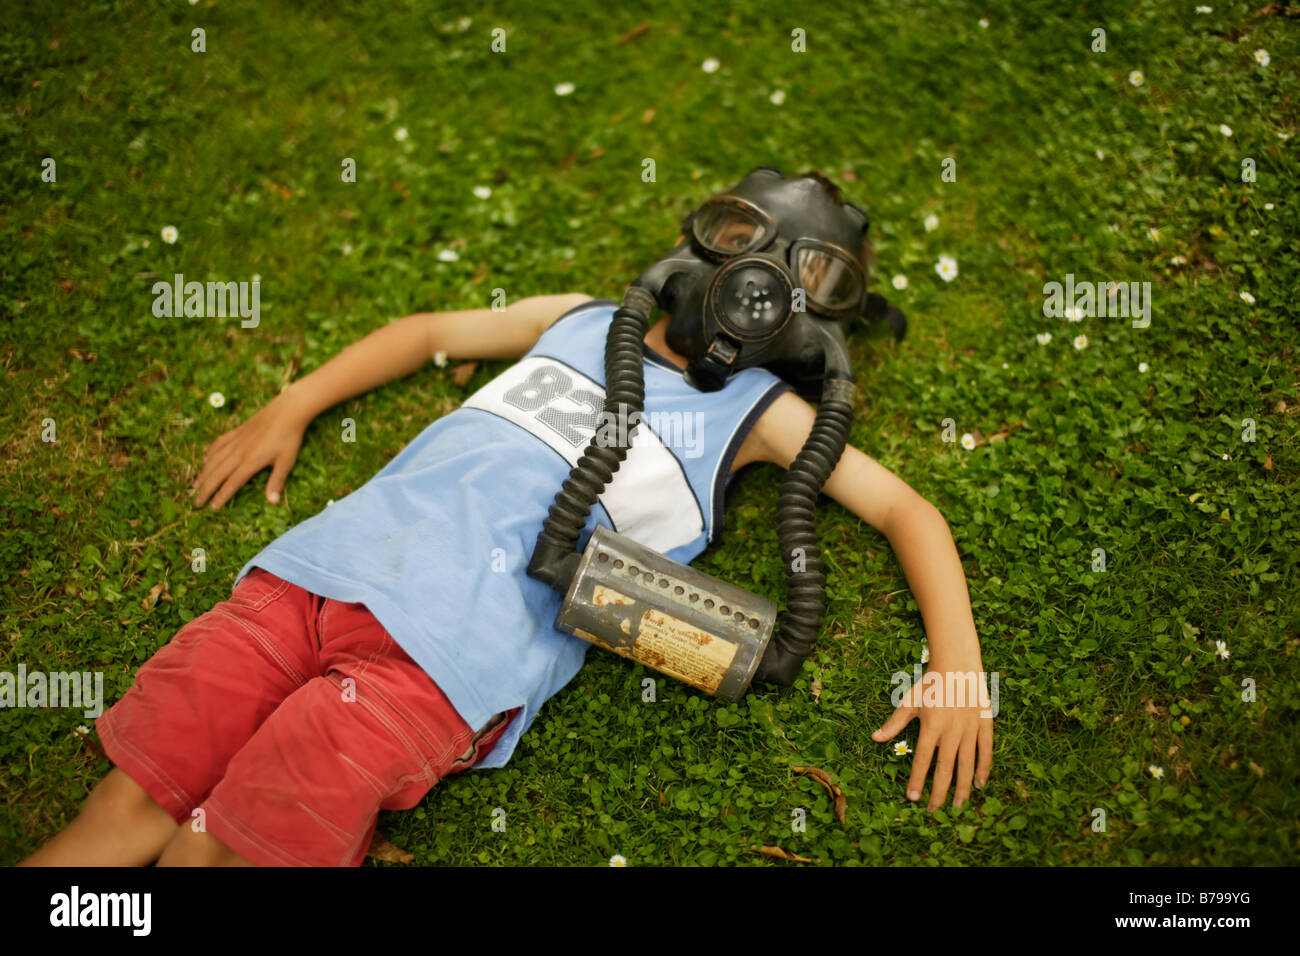 Seis años de edad reside en la pasto verde vistiendo máscara de gas Foto de stock